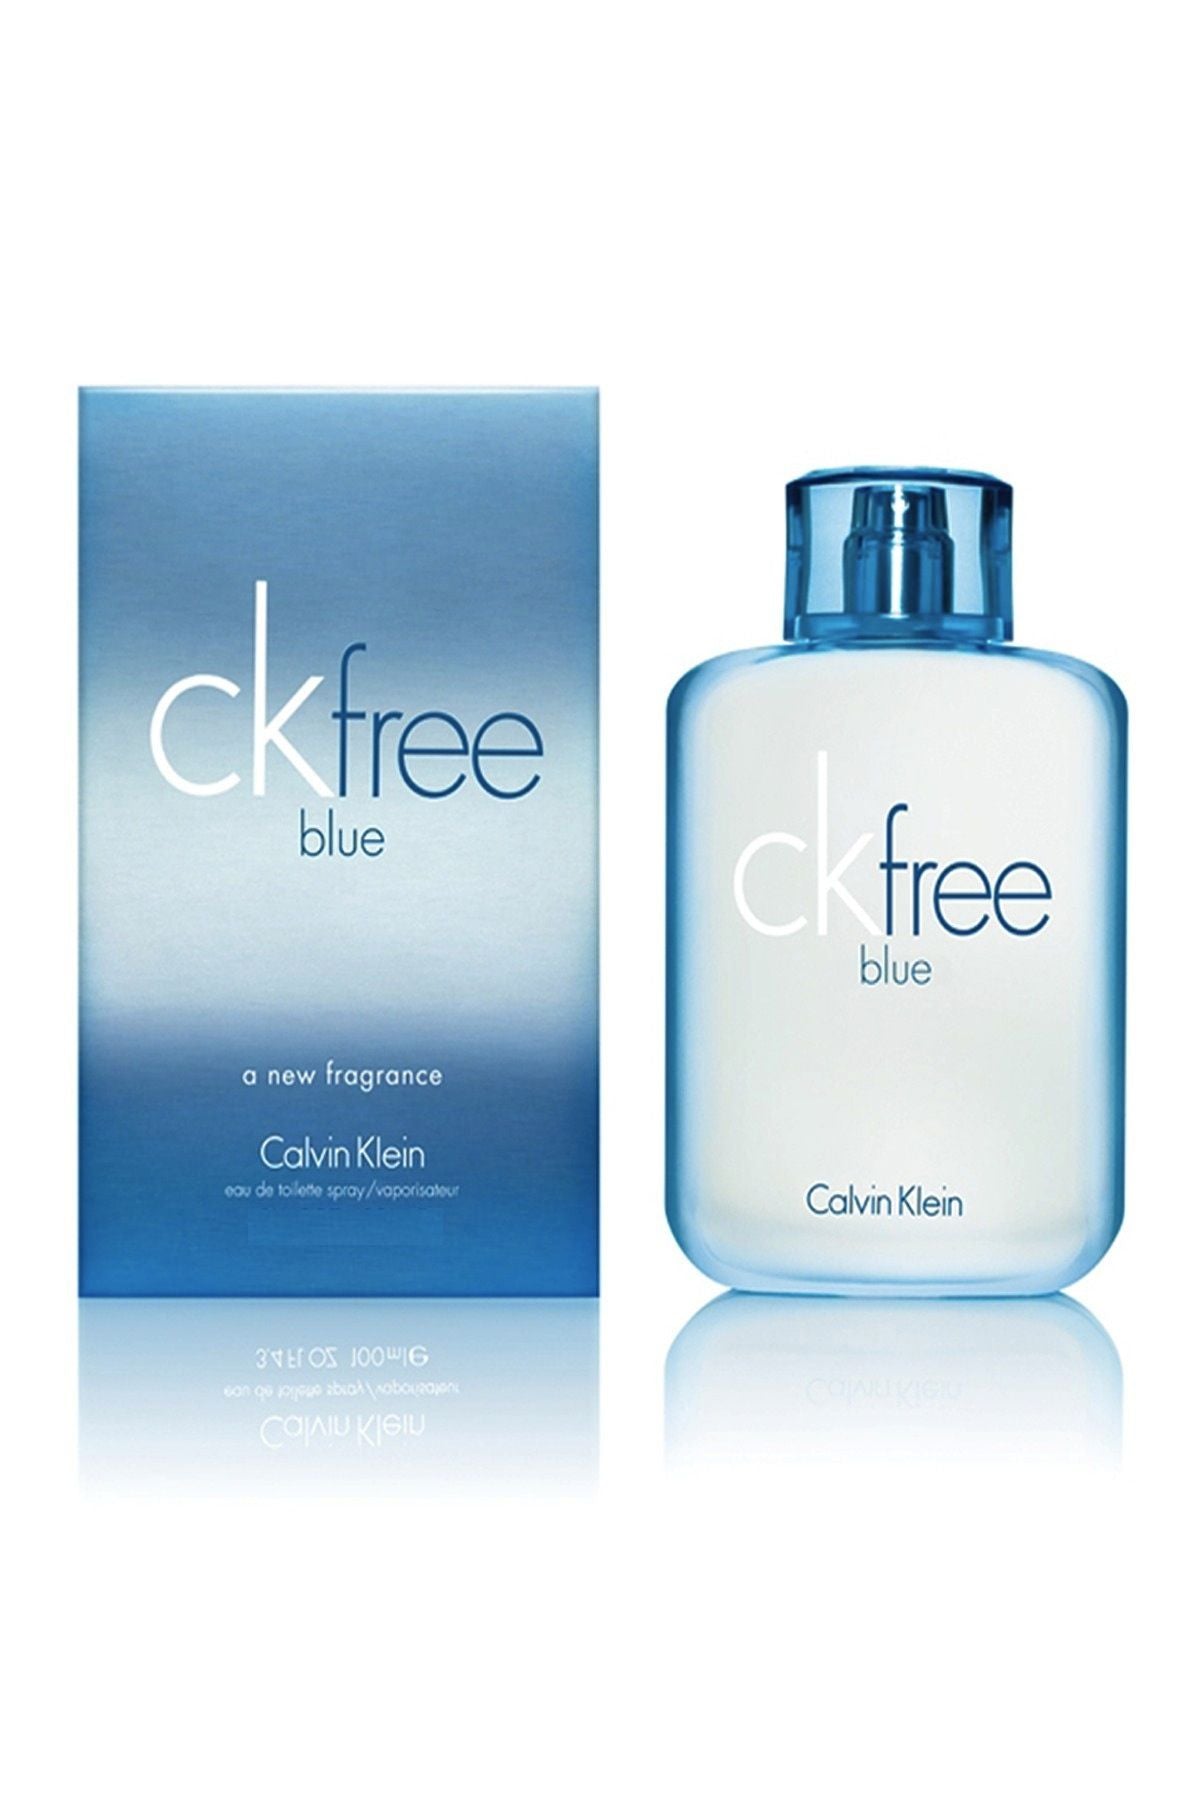 Calvin Klein CK Free Blue 100ml EDT (M) SP - PriceRiteMart